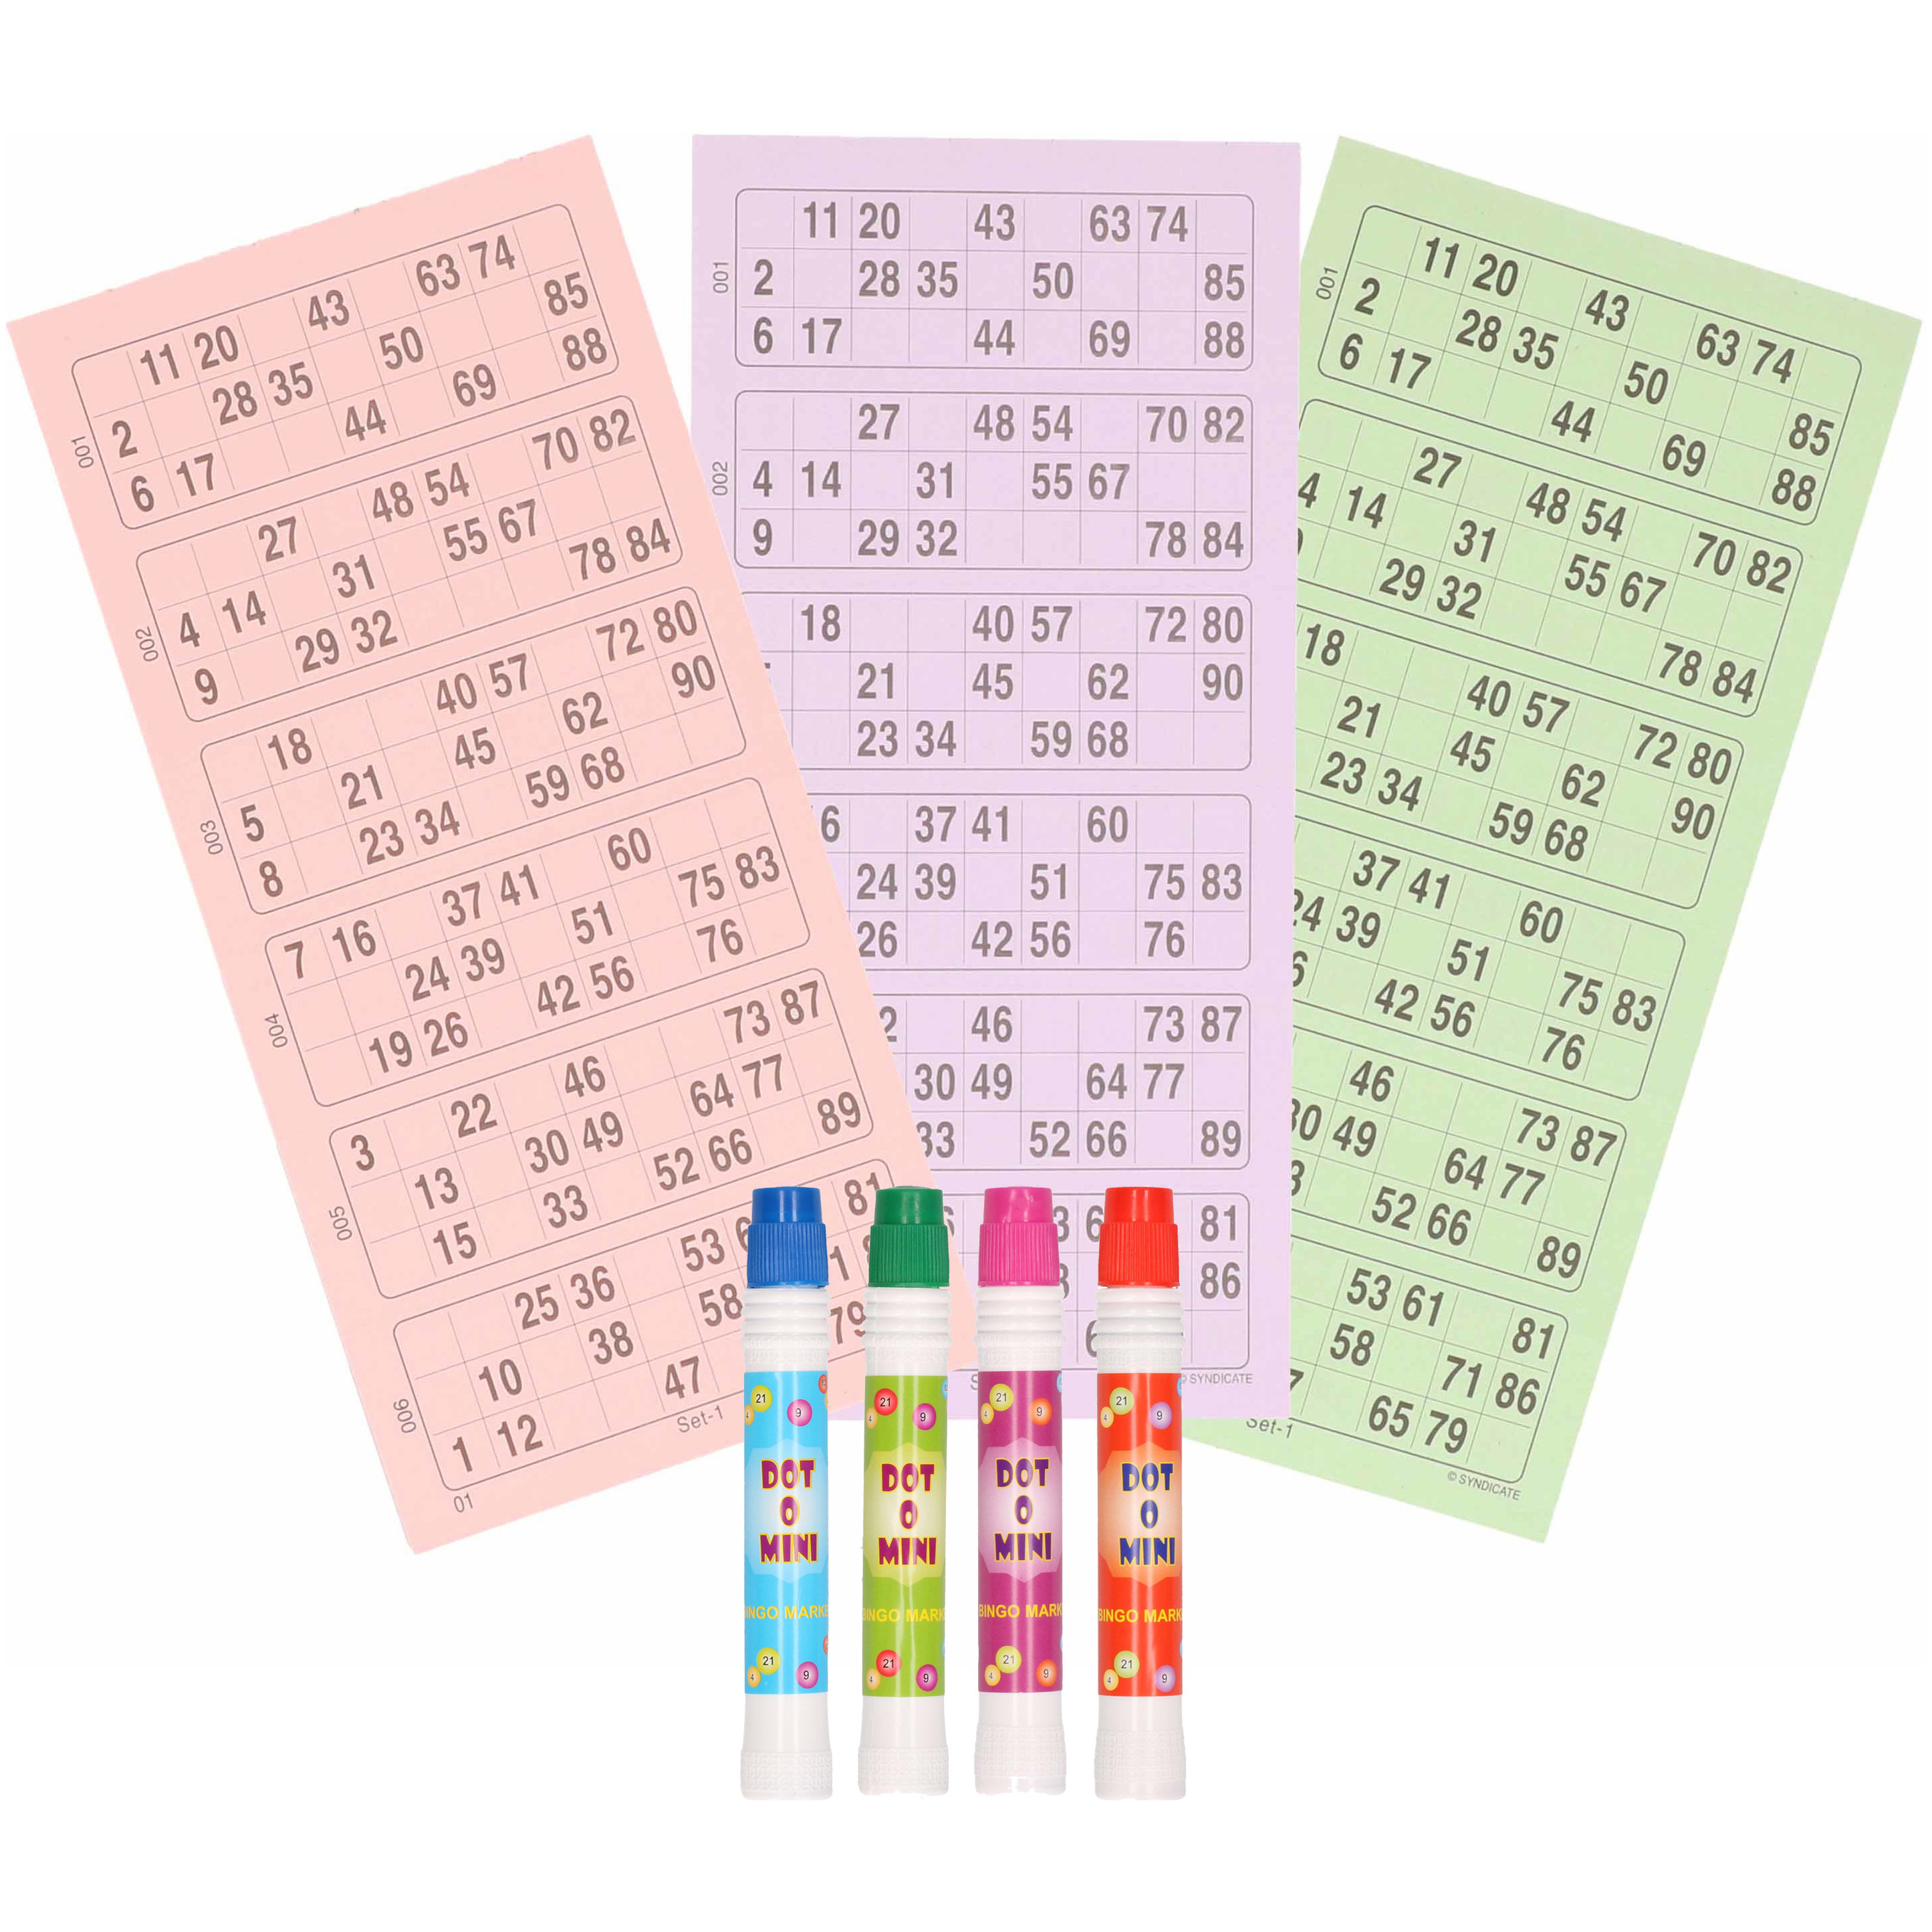 Bingospel accessoires 1-90 met 100 bingokaarten en 4 bingostiften